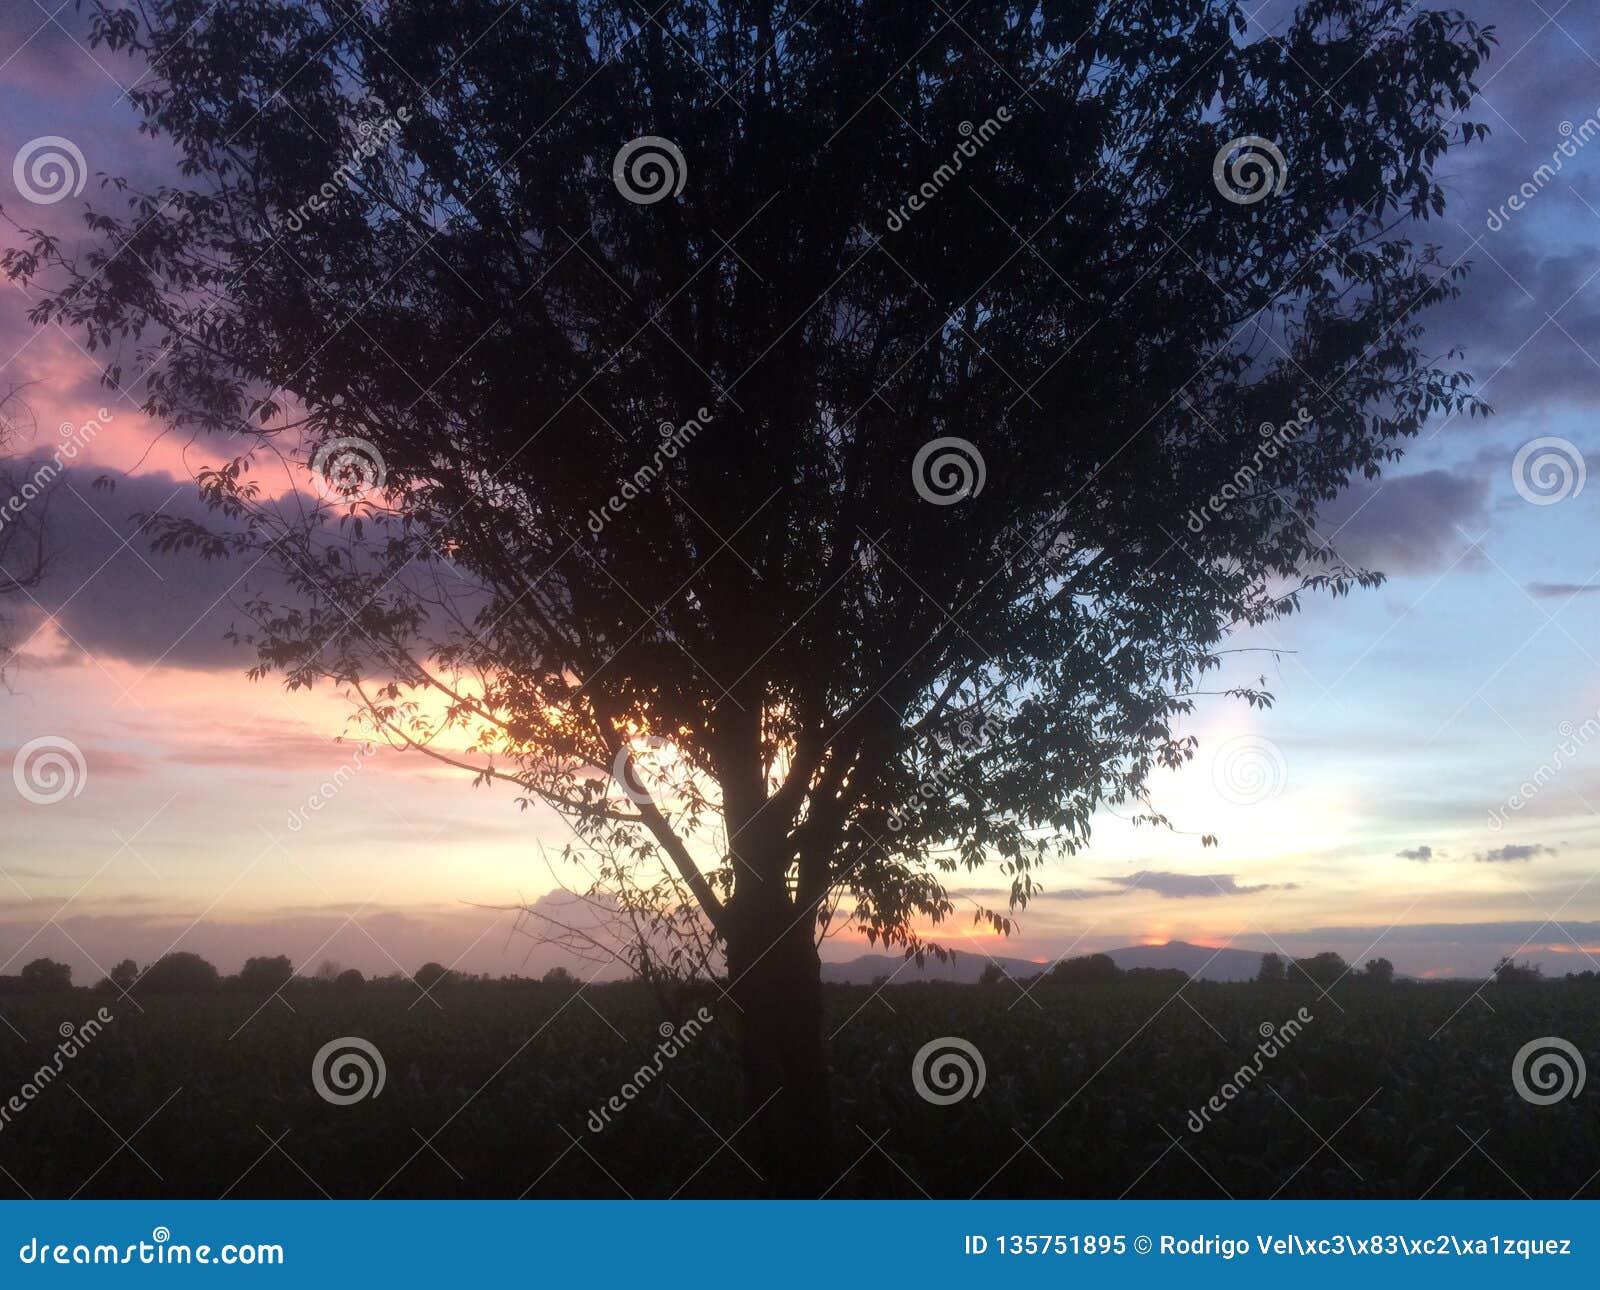 the dividing tree / puesta de sol